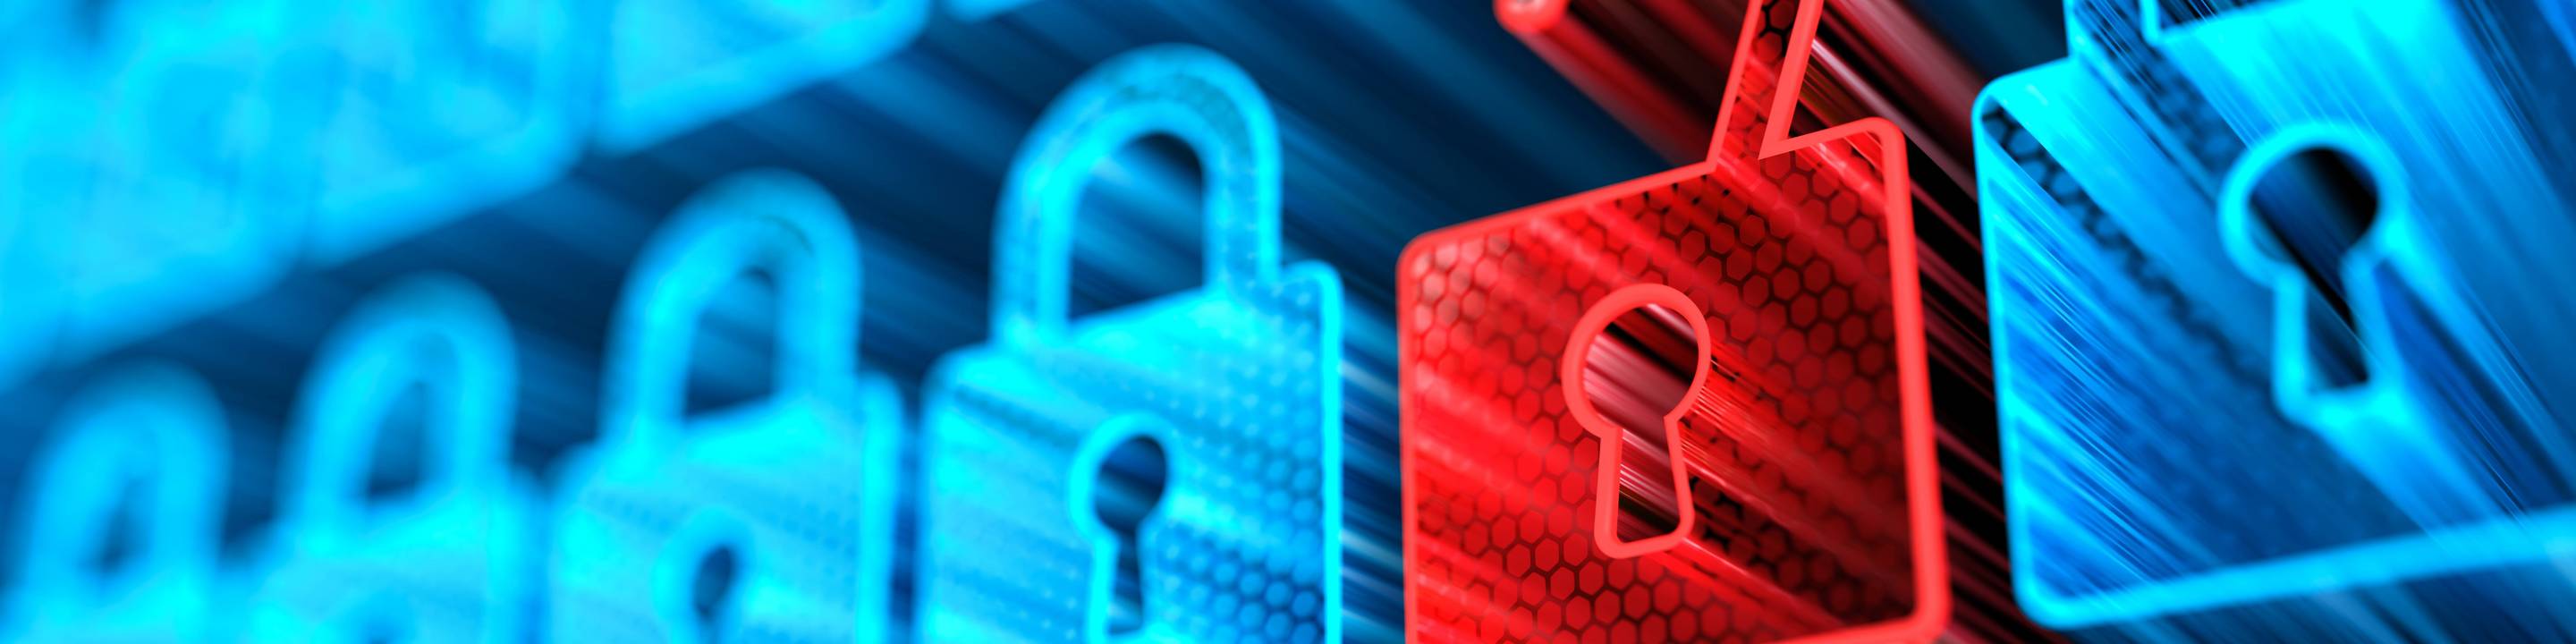 Ein rotes, geöffnetes Schloss als Einfallstor für Cyberattacken inmitten von blauen geschlossenen Schlössern